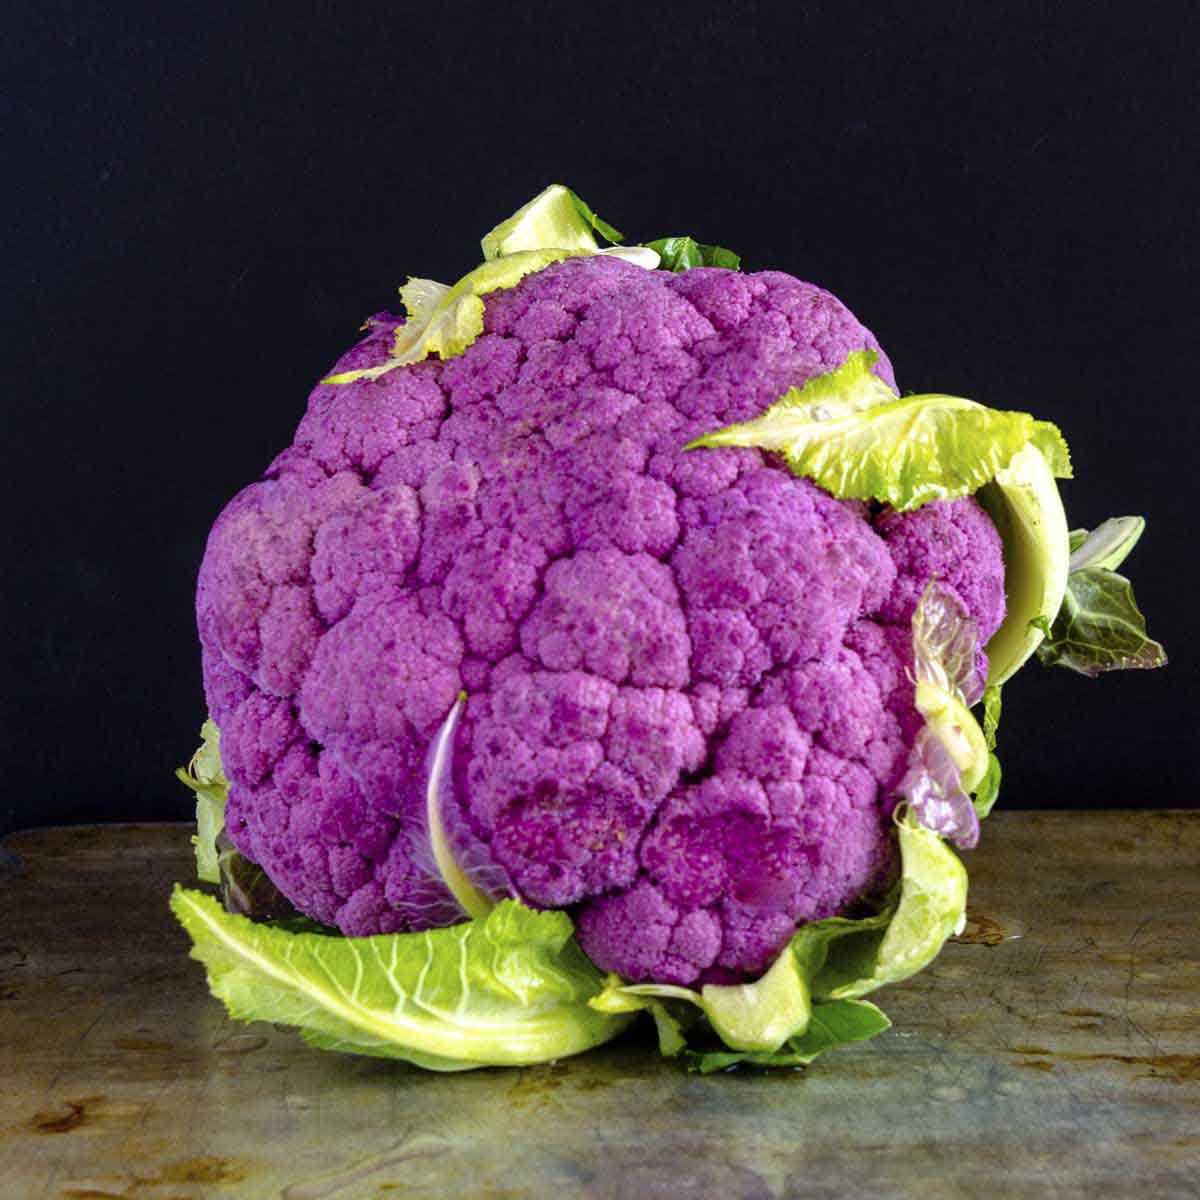 Purple cauliflower head on table.